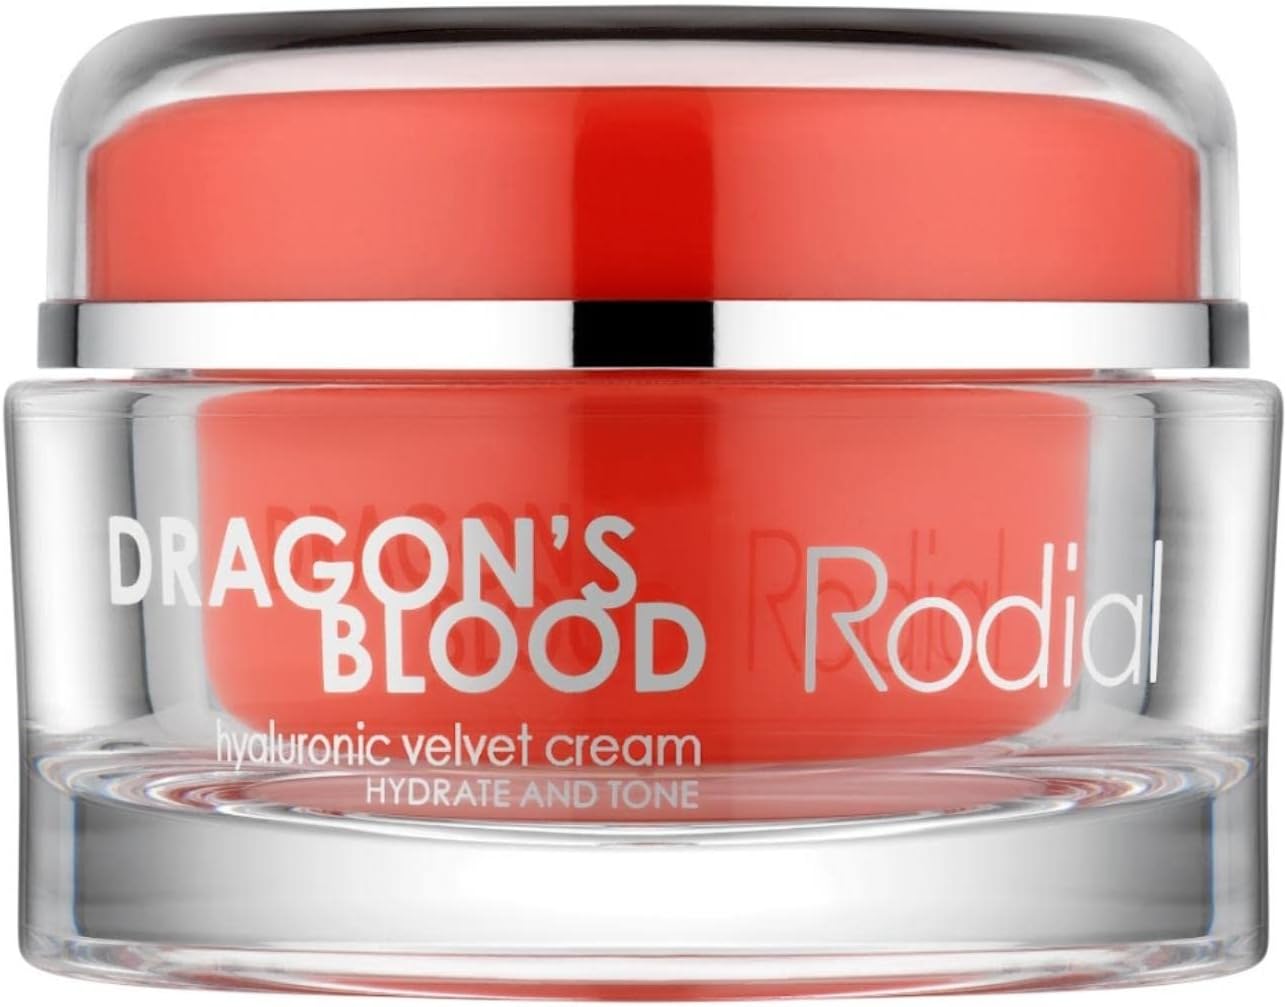 Rodial Dragons Blood Velvet Cream 50 ml Intensive & Rich Moisturiser